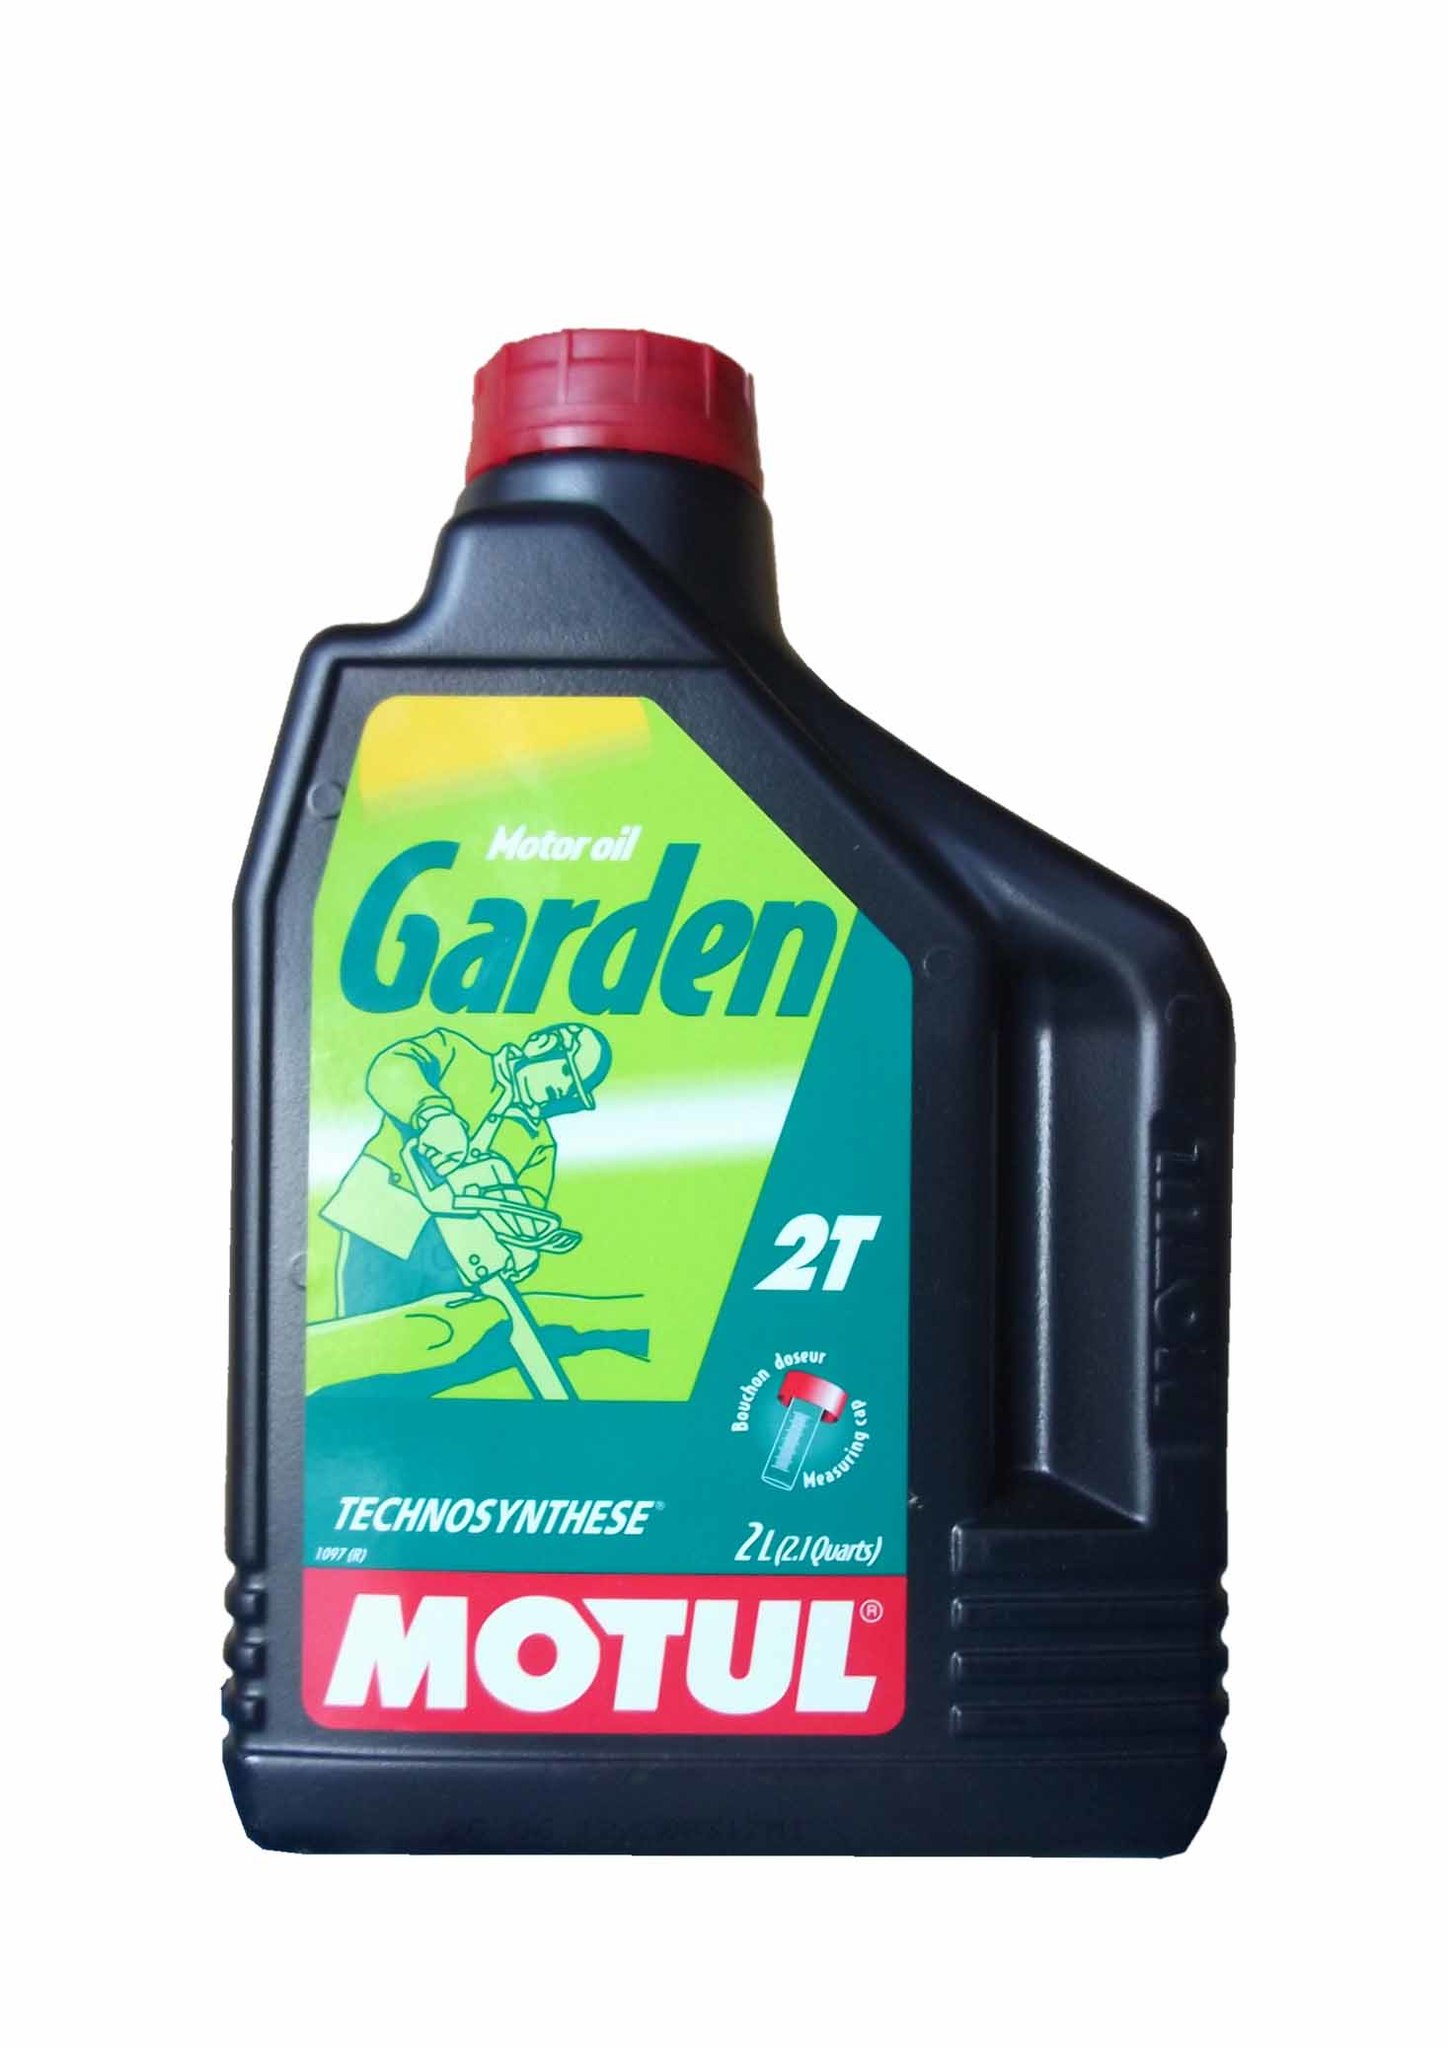 Motul Garden 2T Technosynt Масло для двухтактной садовой техники